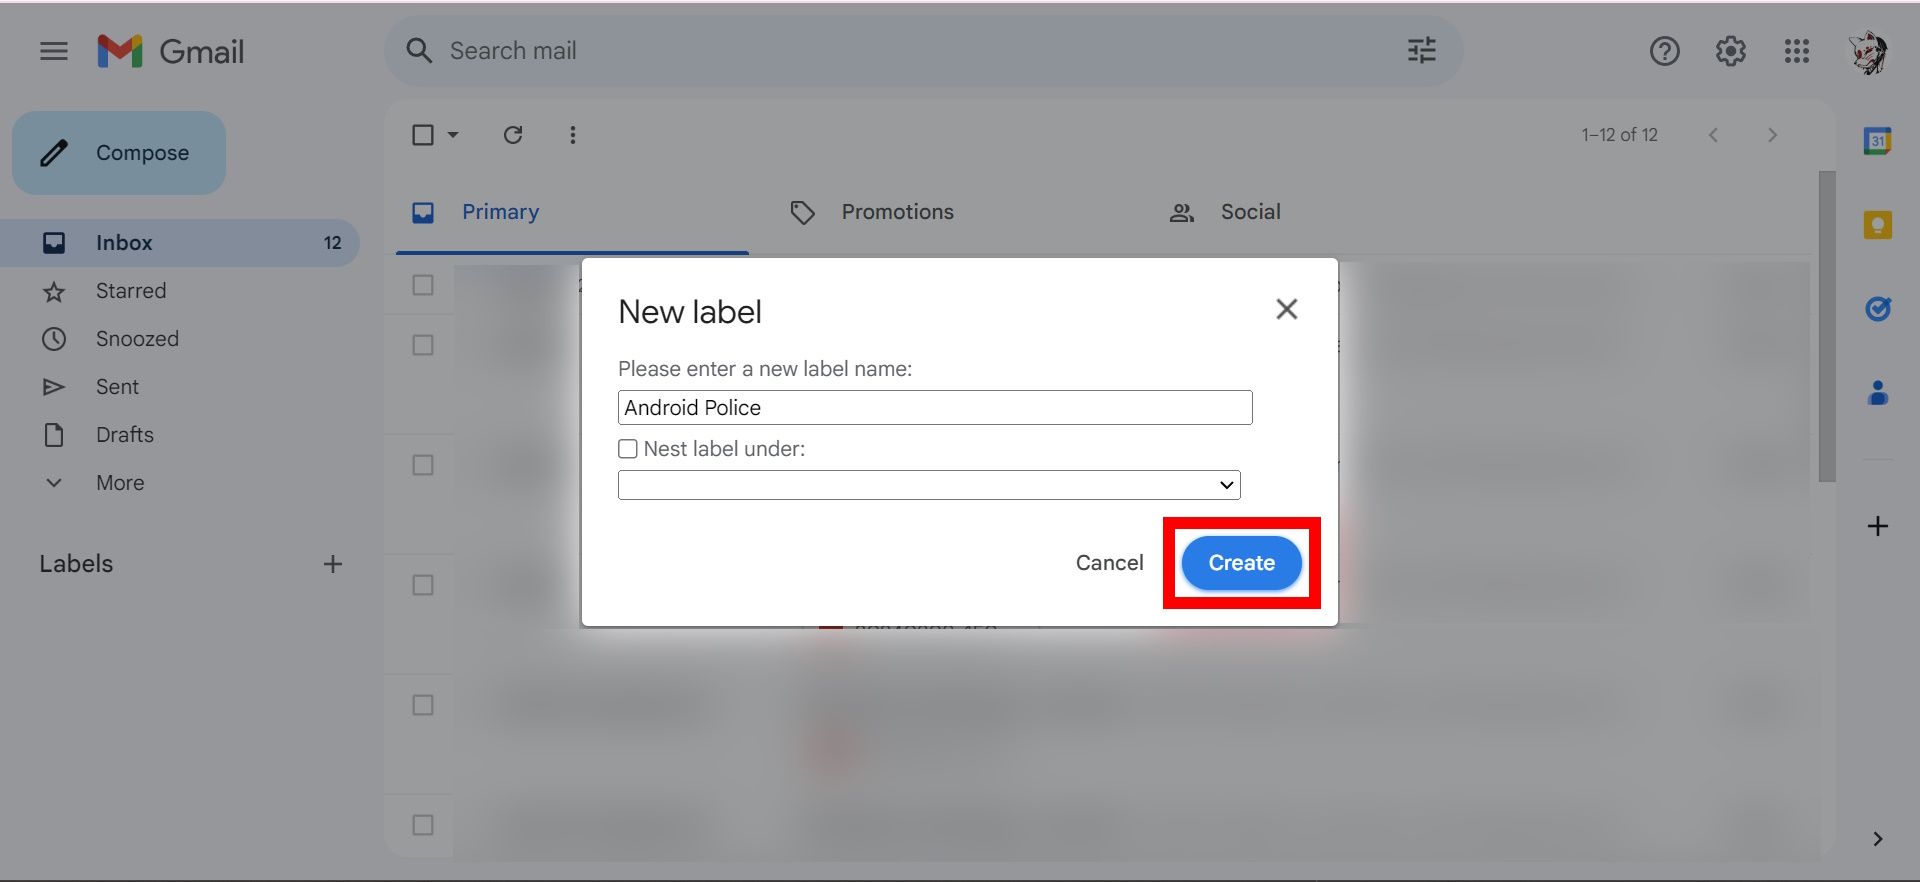 contorno de retângulo vermelho sobre o botão azul criar na nova janela de rótulo no Gmail